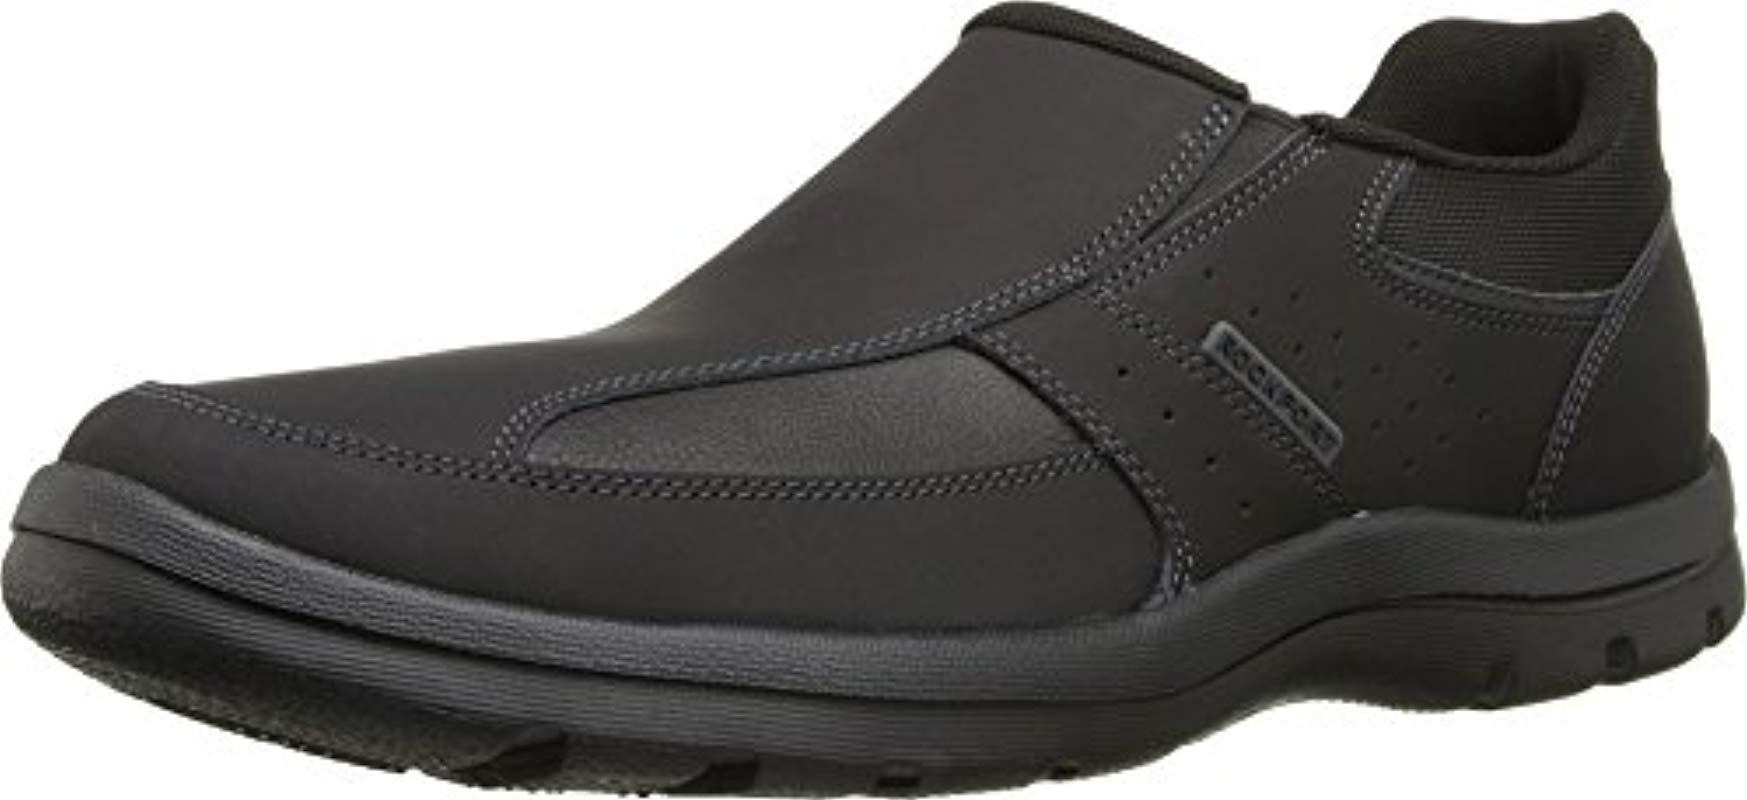 Rockport Leather Get Your Kicks Slip-on Loafer in Black for Men - Save ...